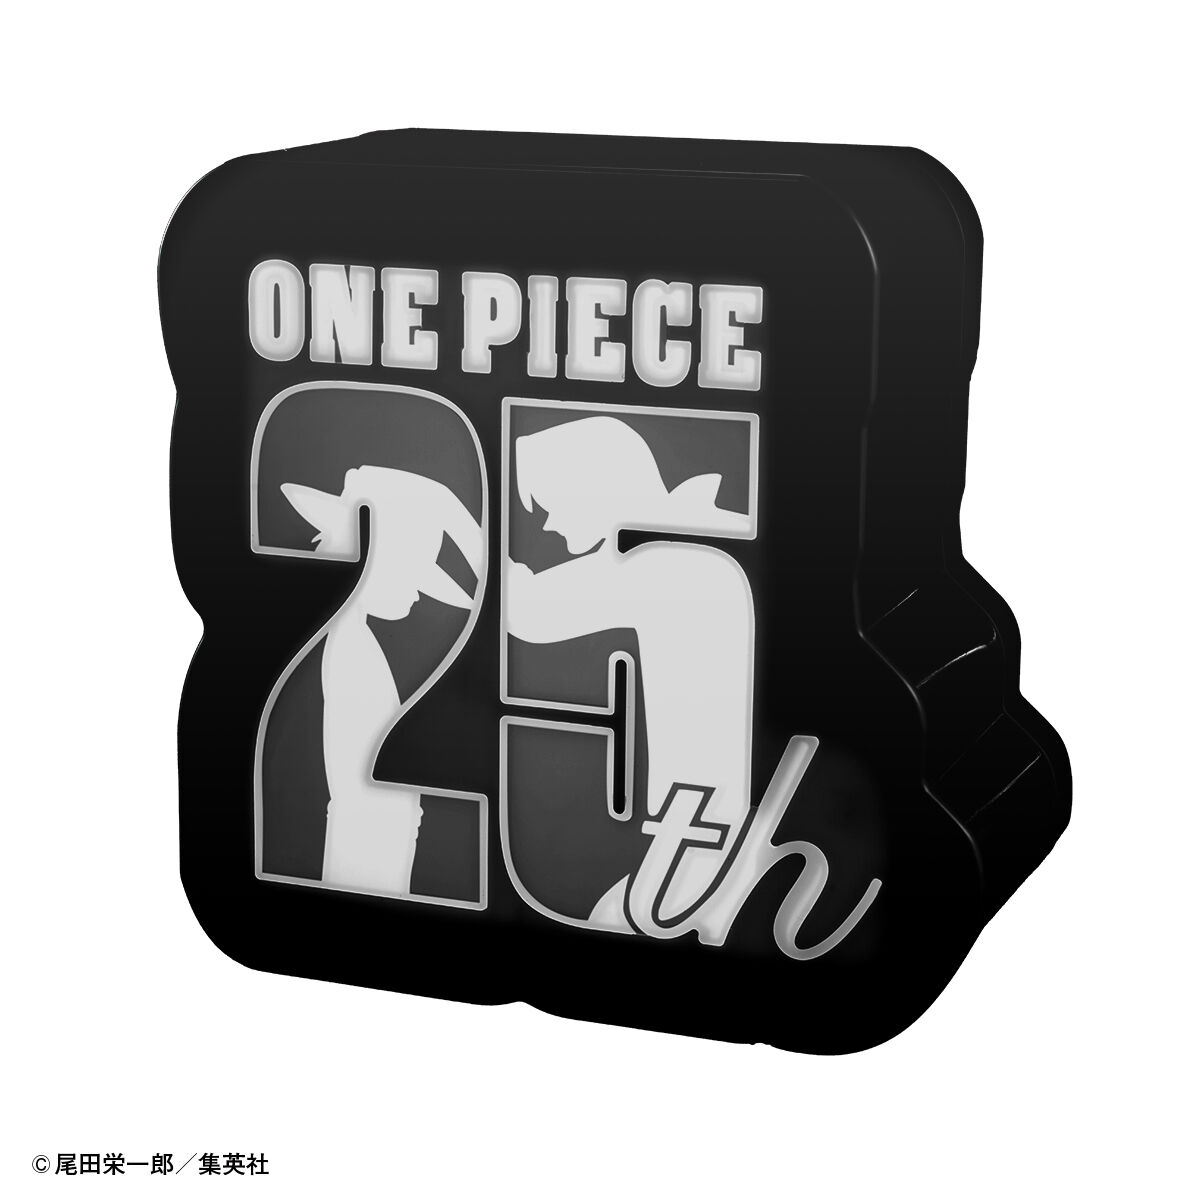 原作「ONE PIECE」25周年ロゴライトスタンド-BLACK- | ONE PIECE 